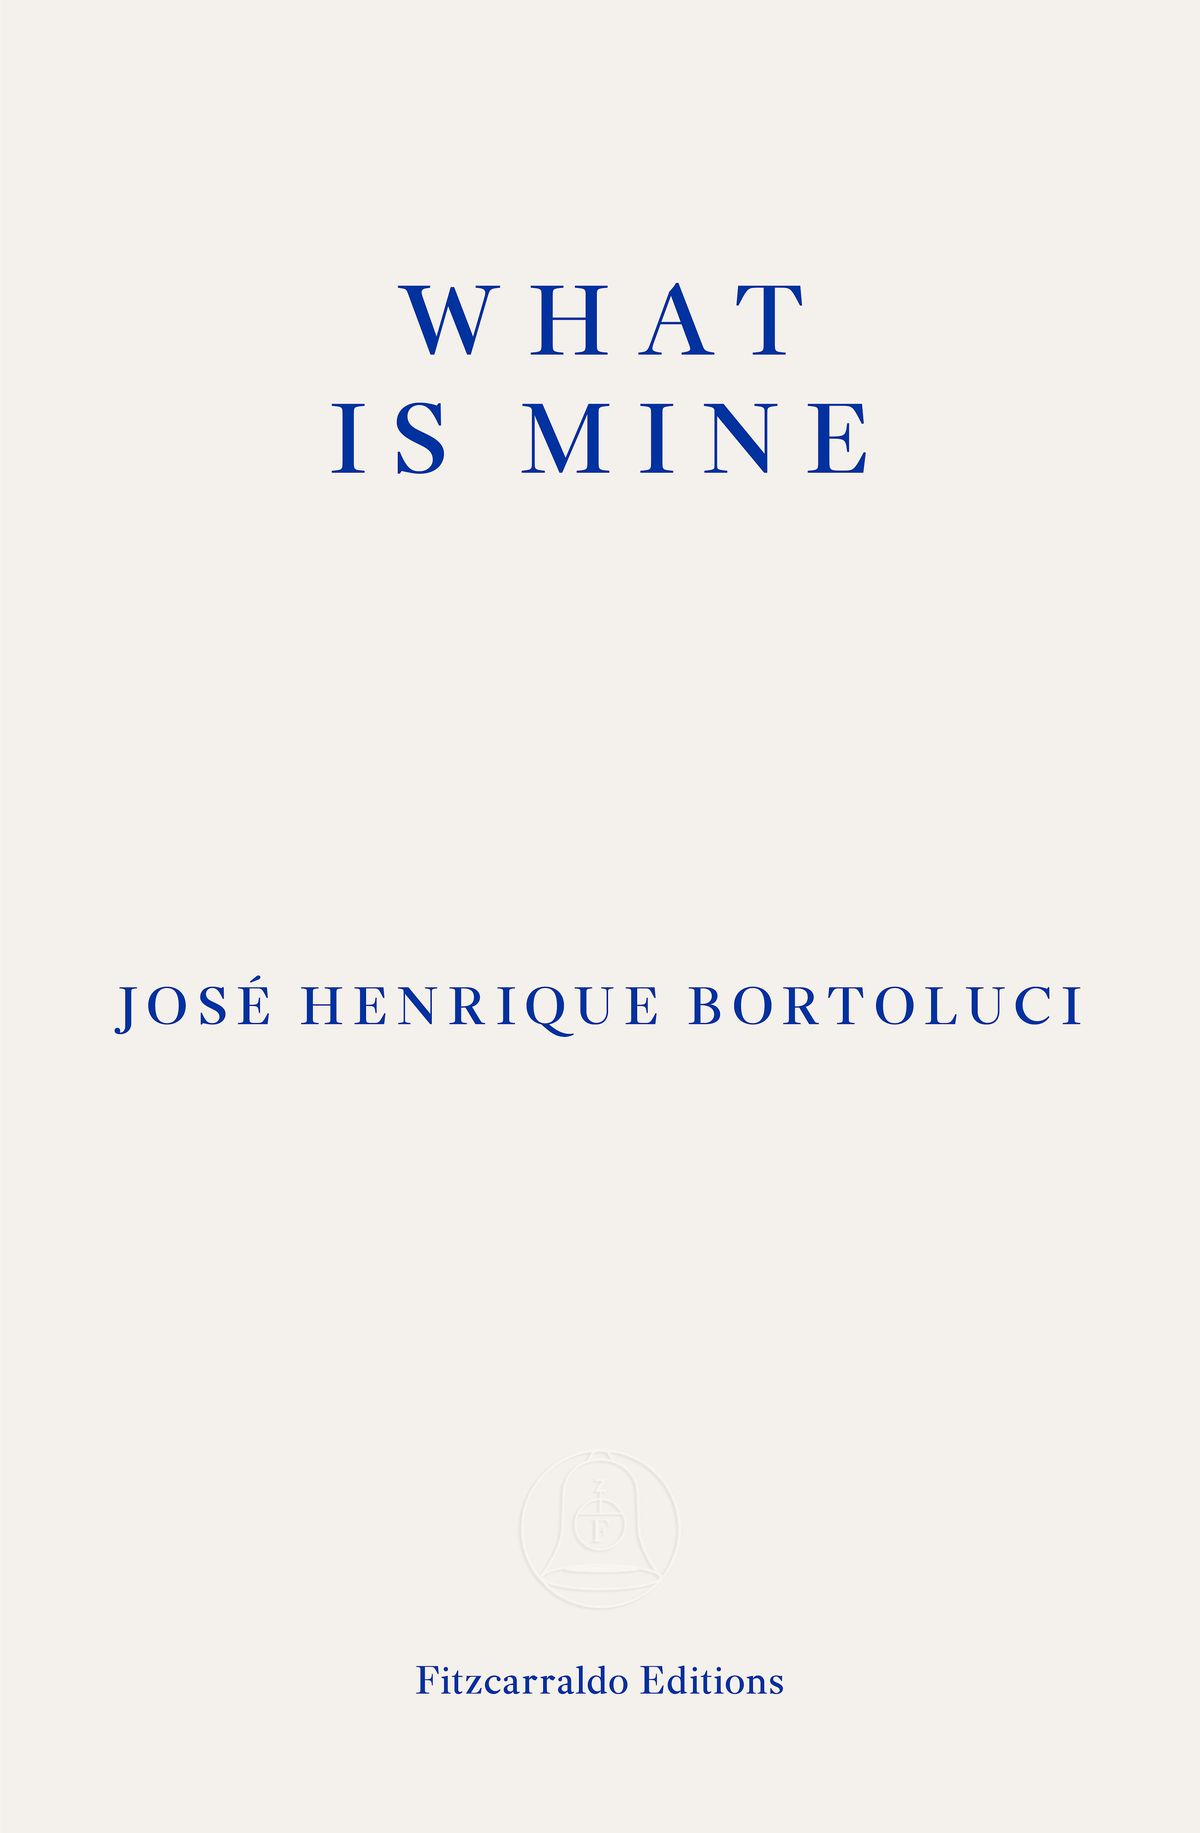 Jos\u00e9 Henrique Bortoluci in conversation about WHAT IS MINE